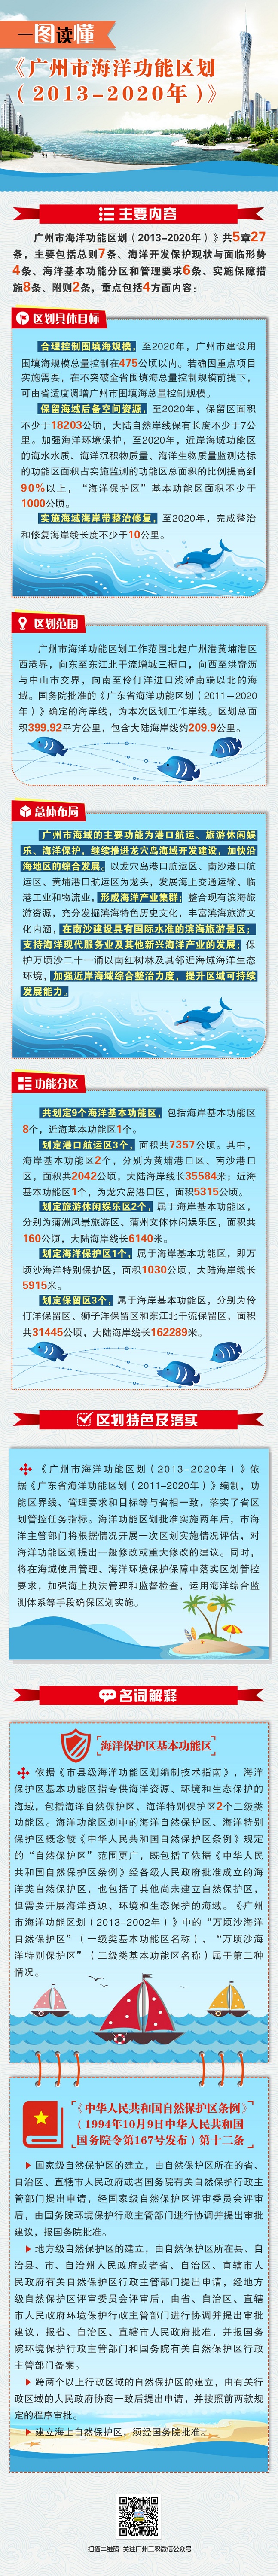 广州海洋功能区划图文解读